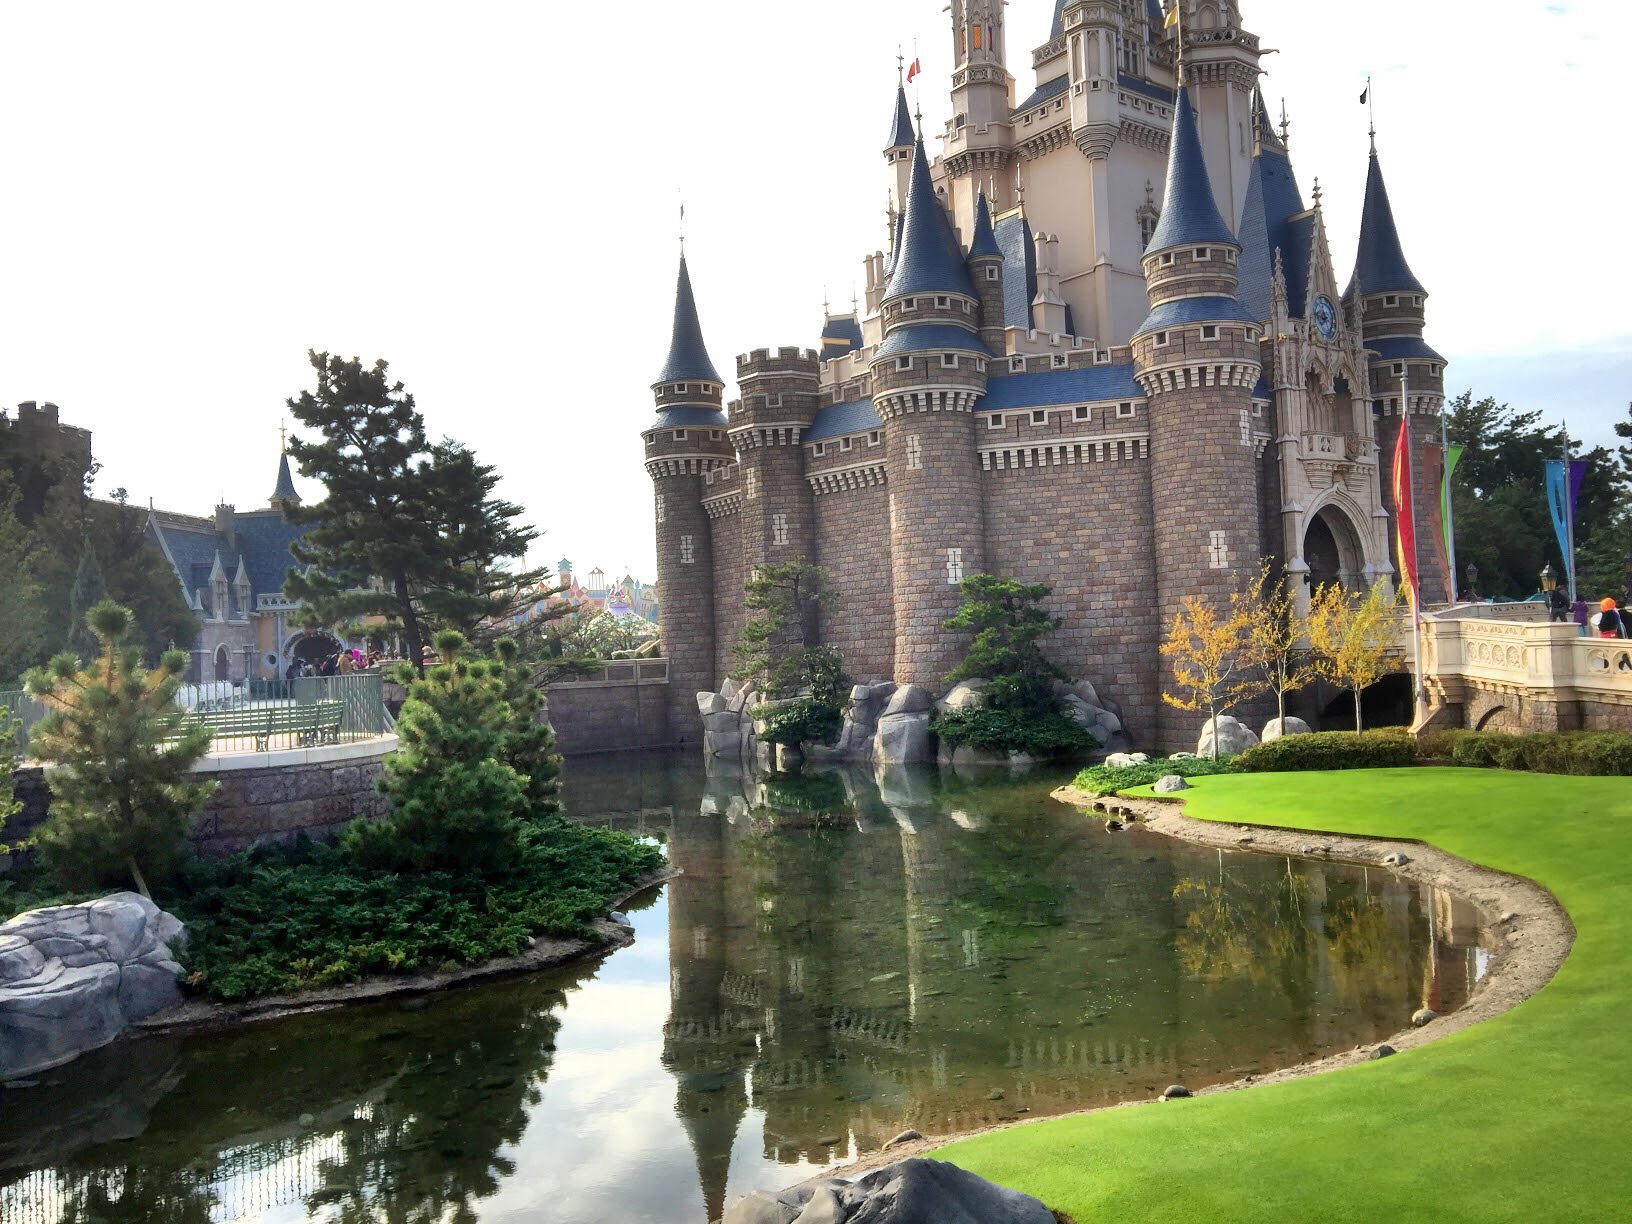 LocoBee Tokyo Disneyland